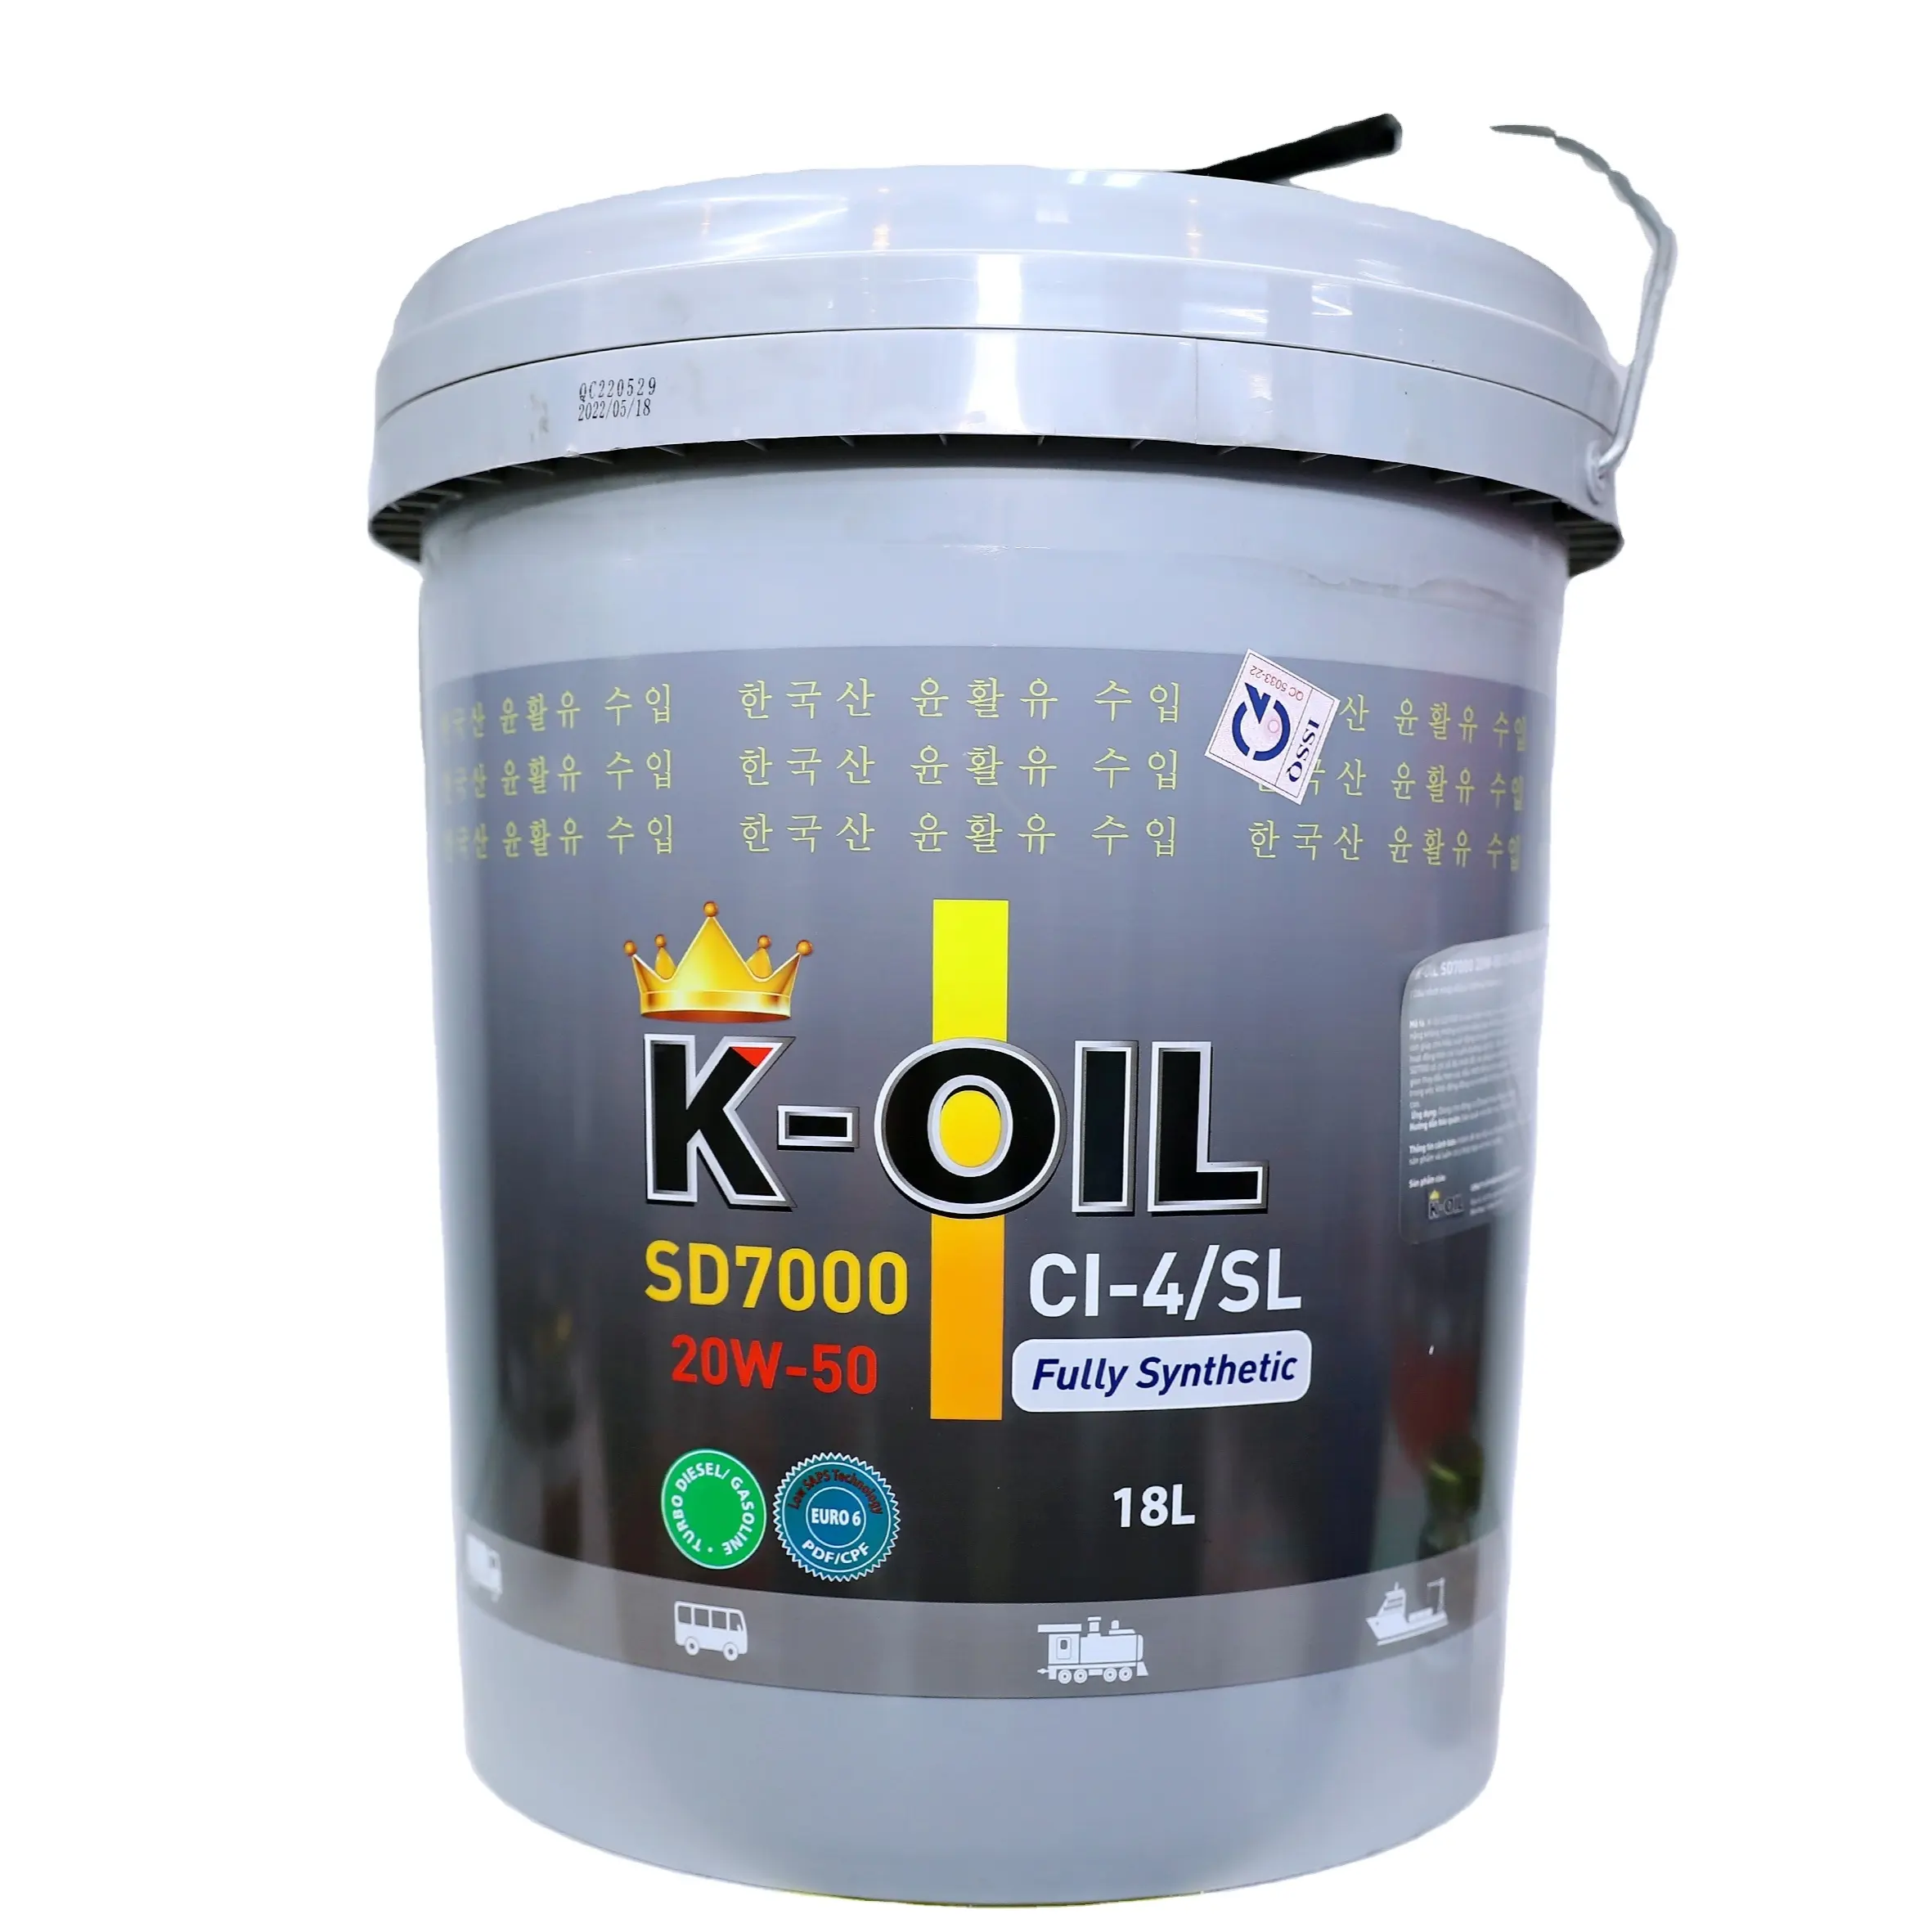 K-Oil SD7000 15 W40/20 W50 CI-4/SL Voll synthetisches Öl, lange Lebensdauer und günstige Preis anwendung Dieselmotoren